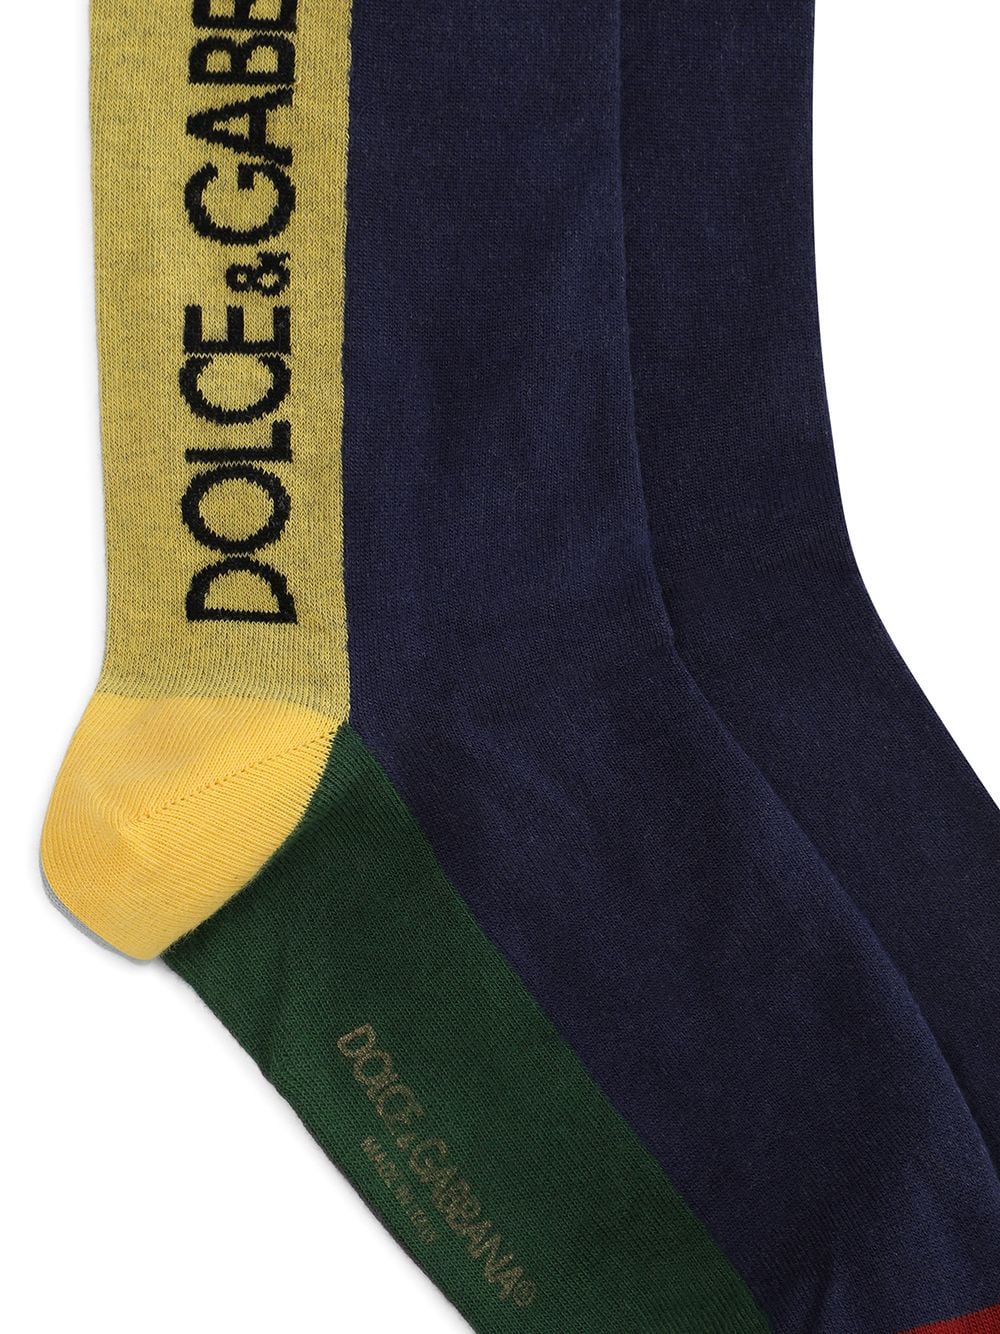 фото Dolce & gabbana носки с логотипом